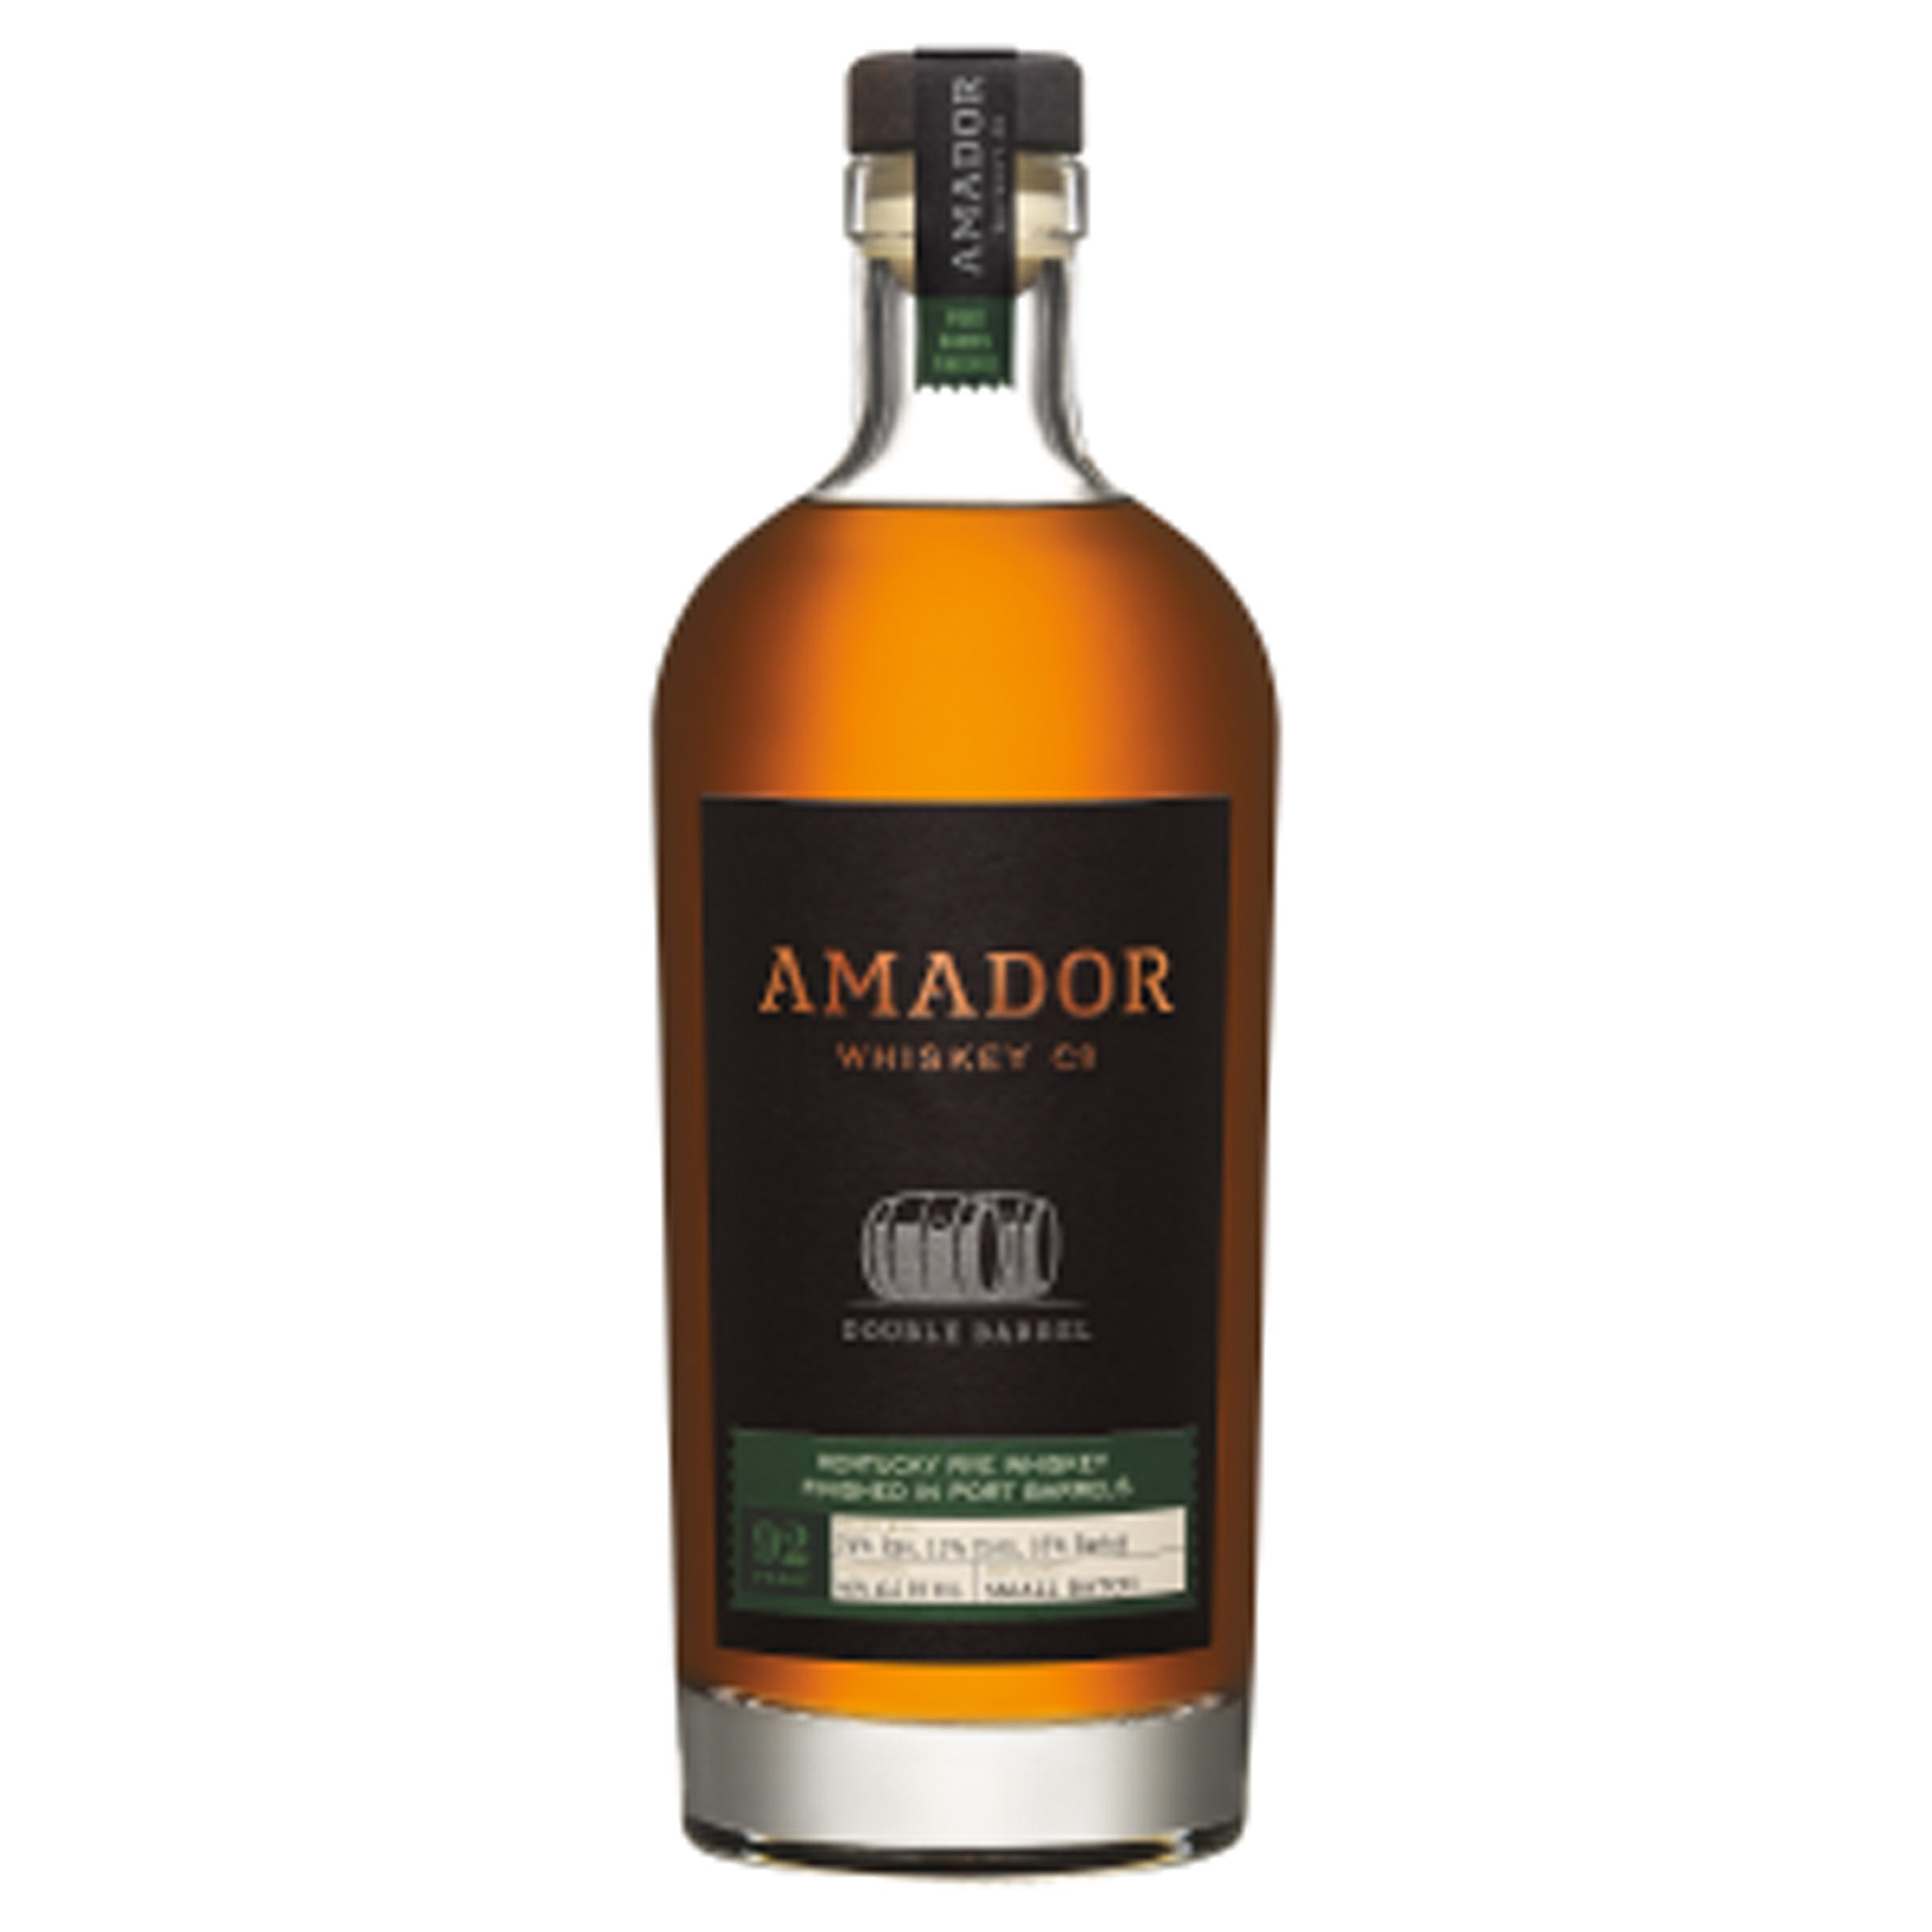 Amador Double Barrel Port Finish Whiskey